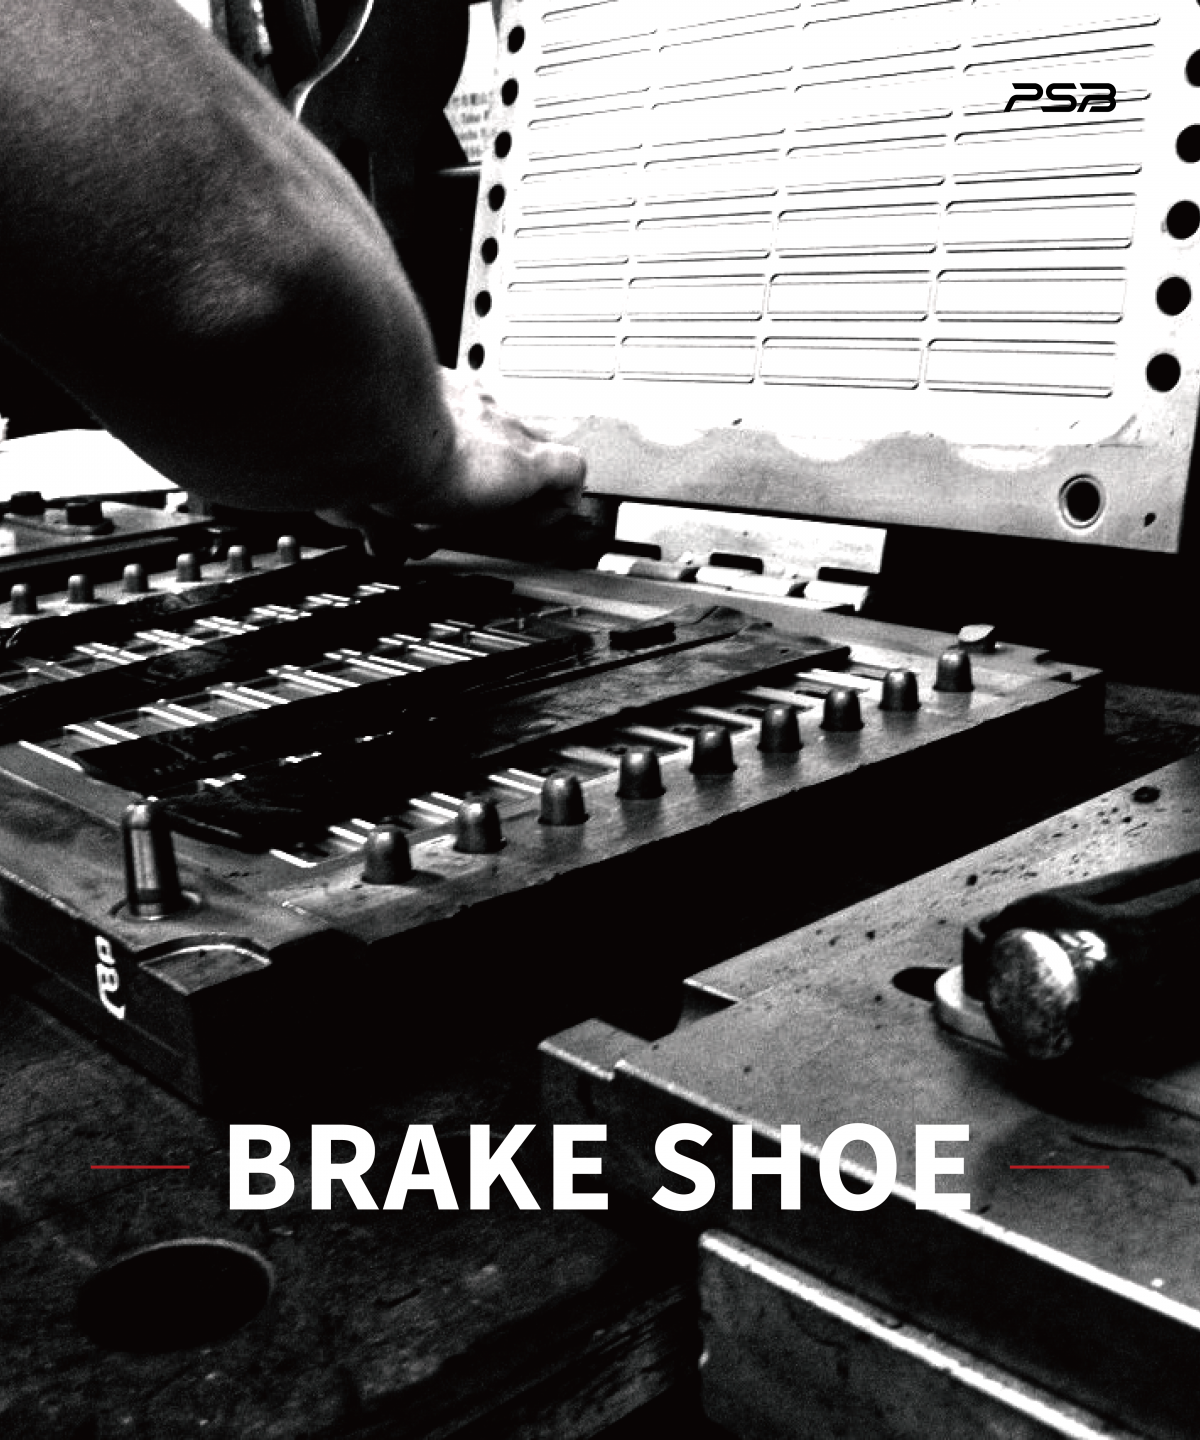 Brake Shoe